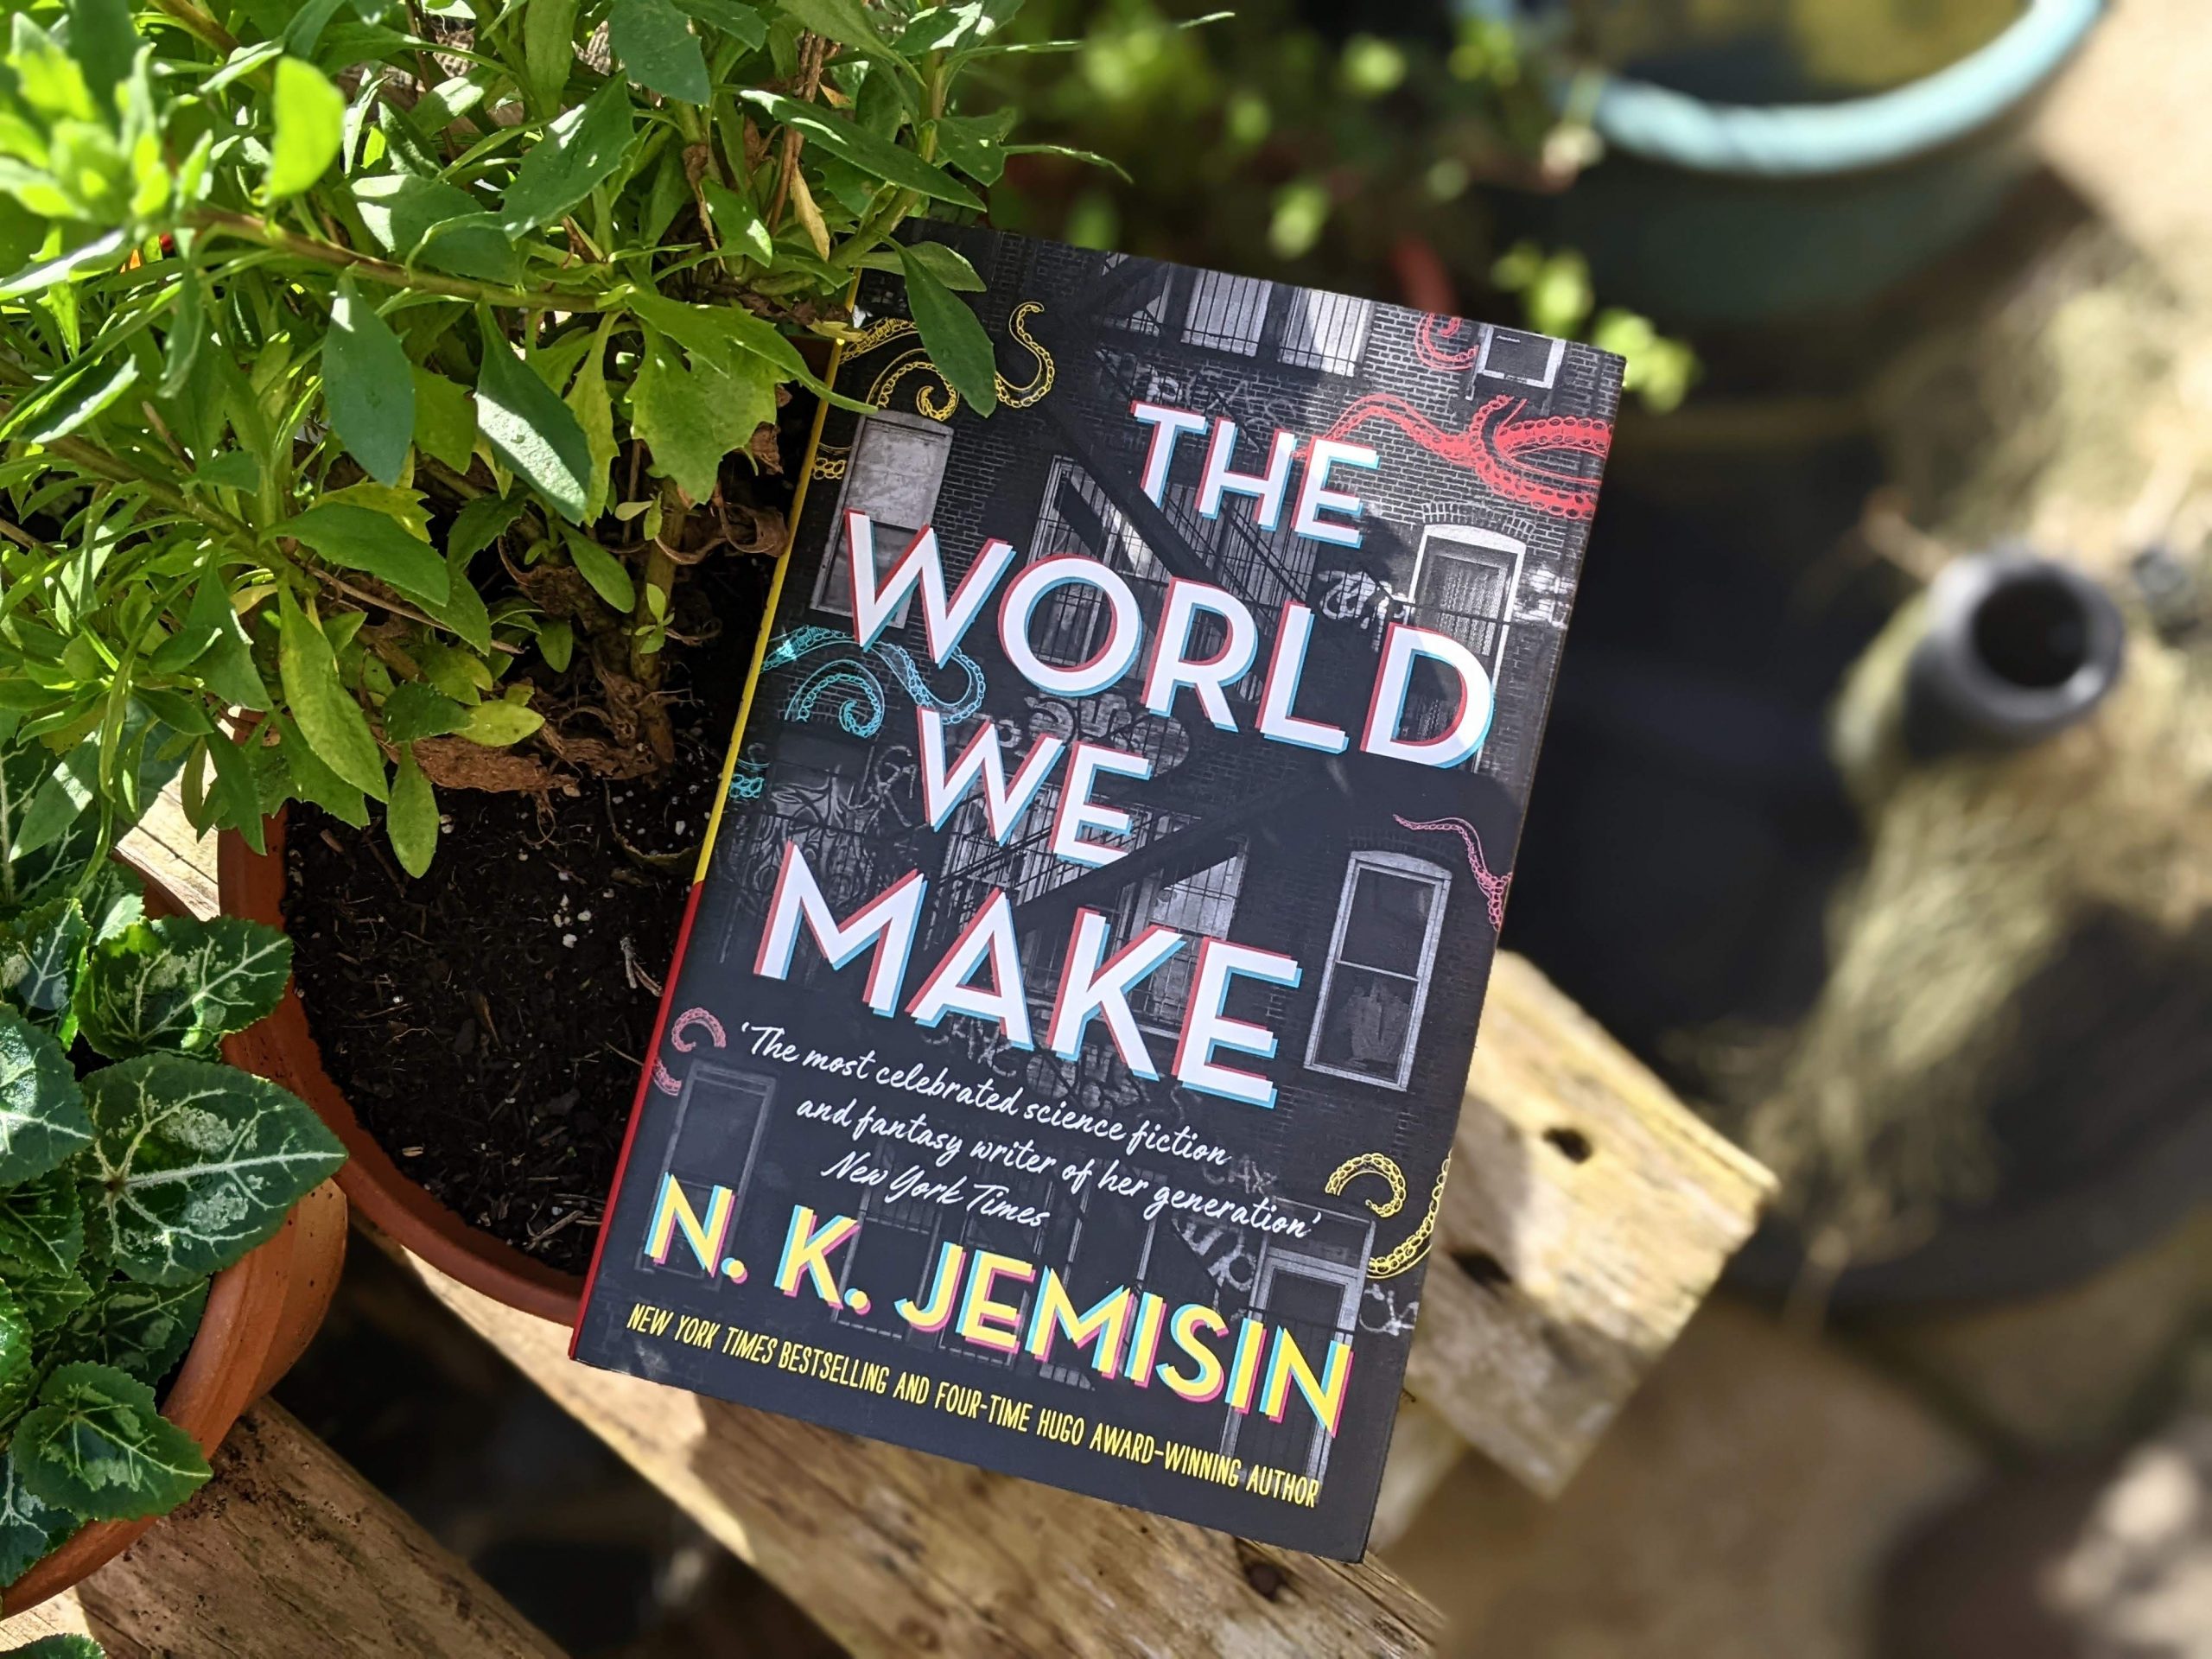 The World We Make by N.K. Jemison